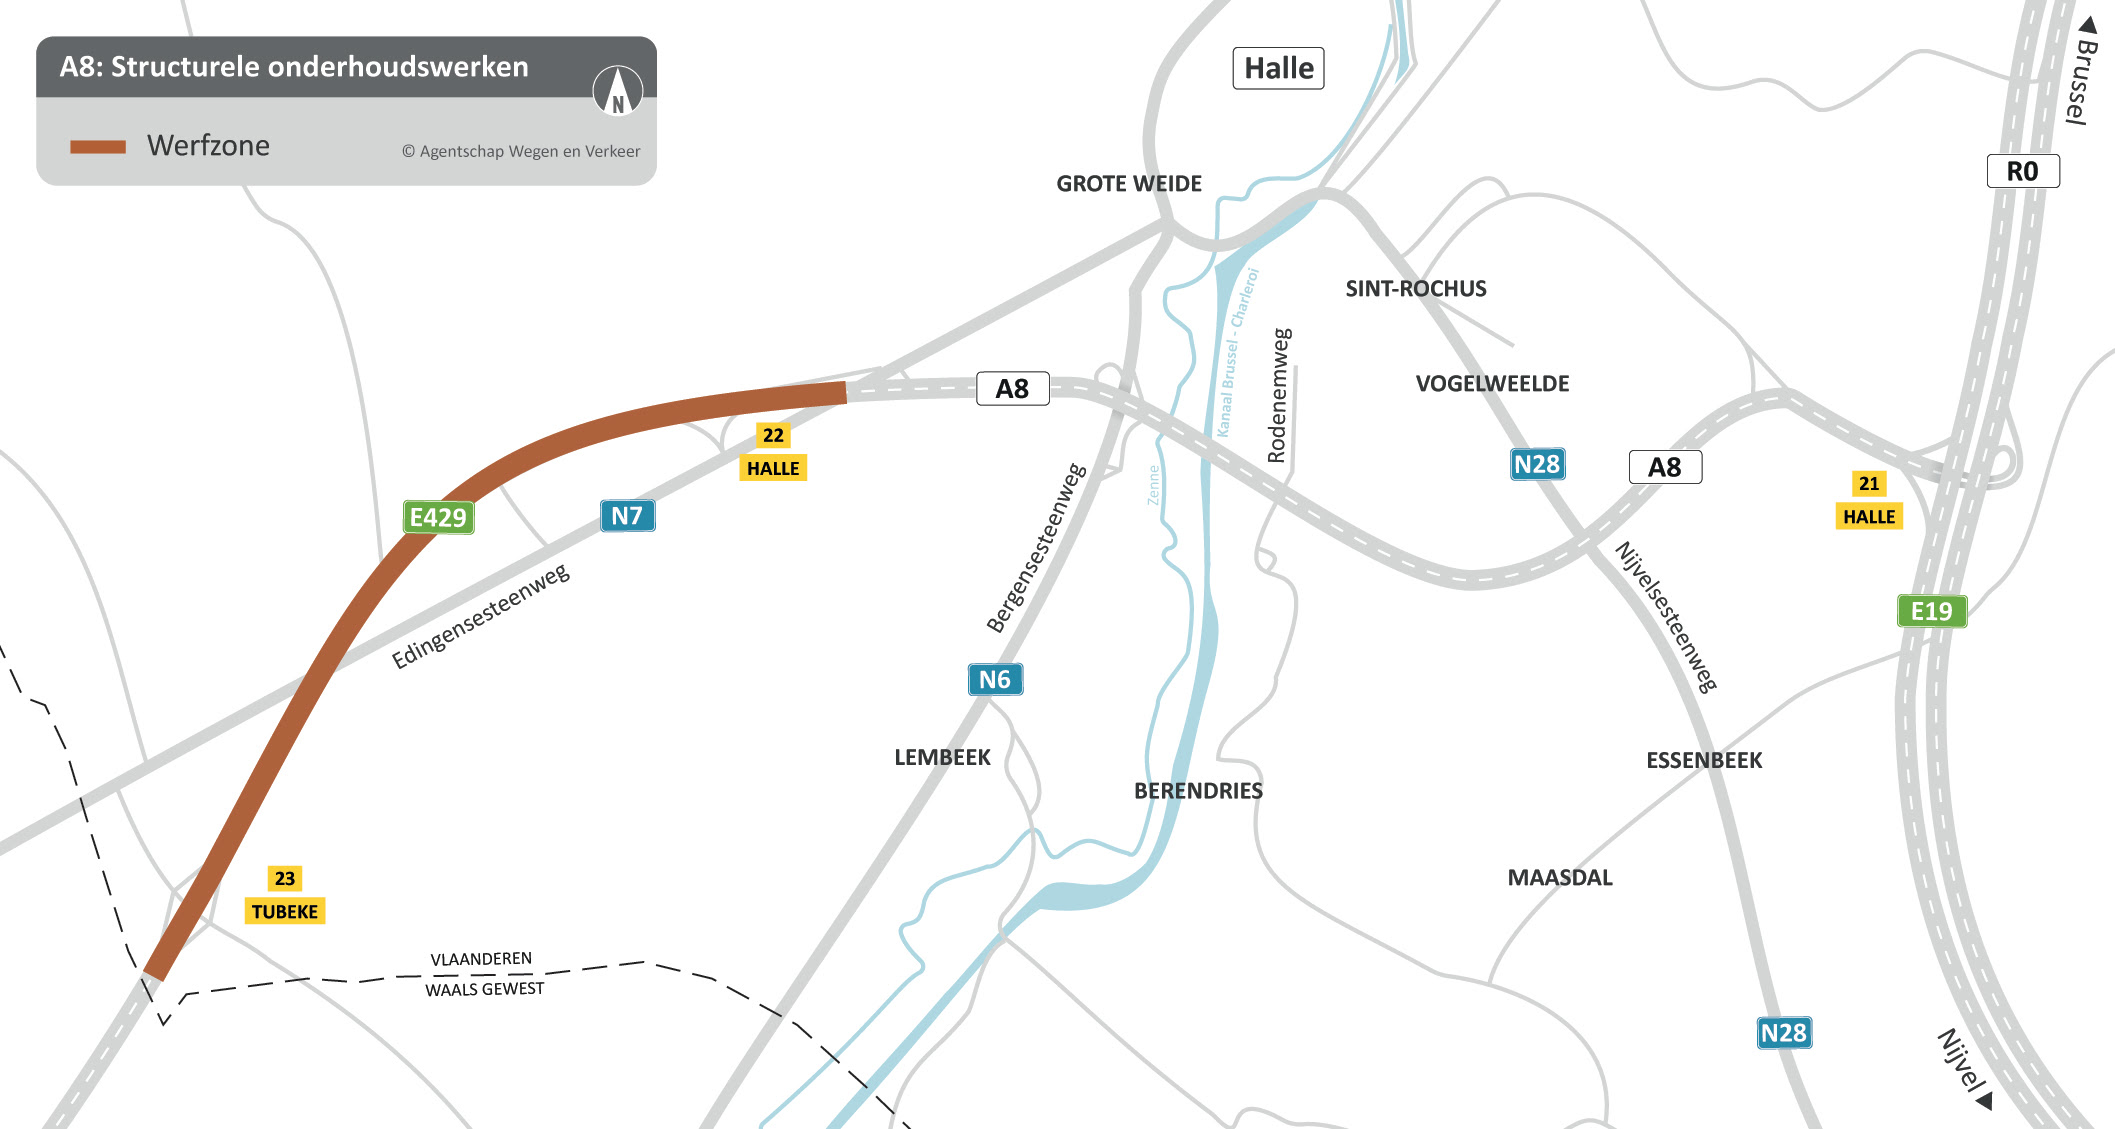 3,5 km nieuw wegdek voor de A8 tussen op-en afrittencomplex van Tubize (n°23) en Halle (n°22)